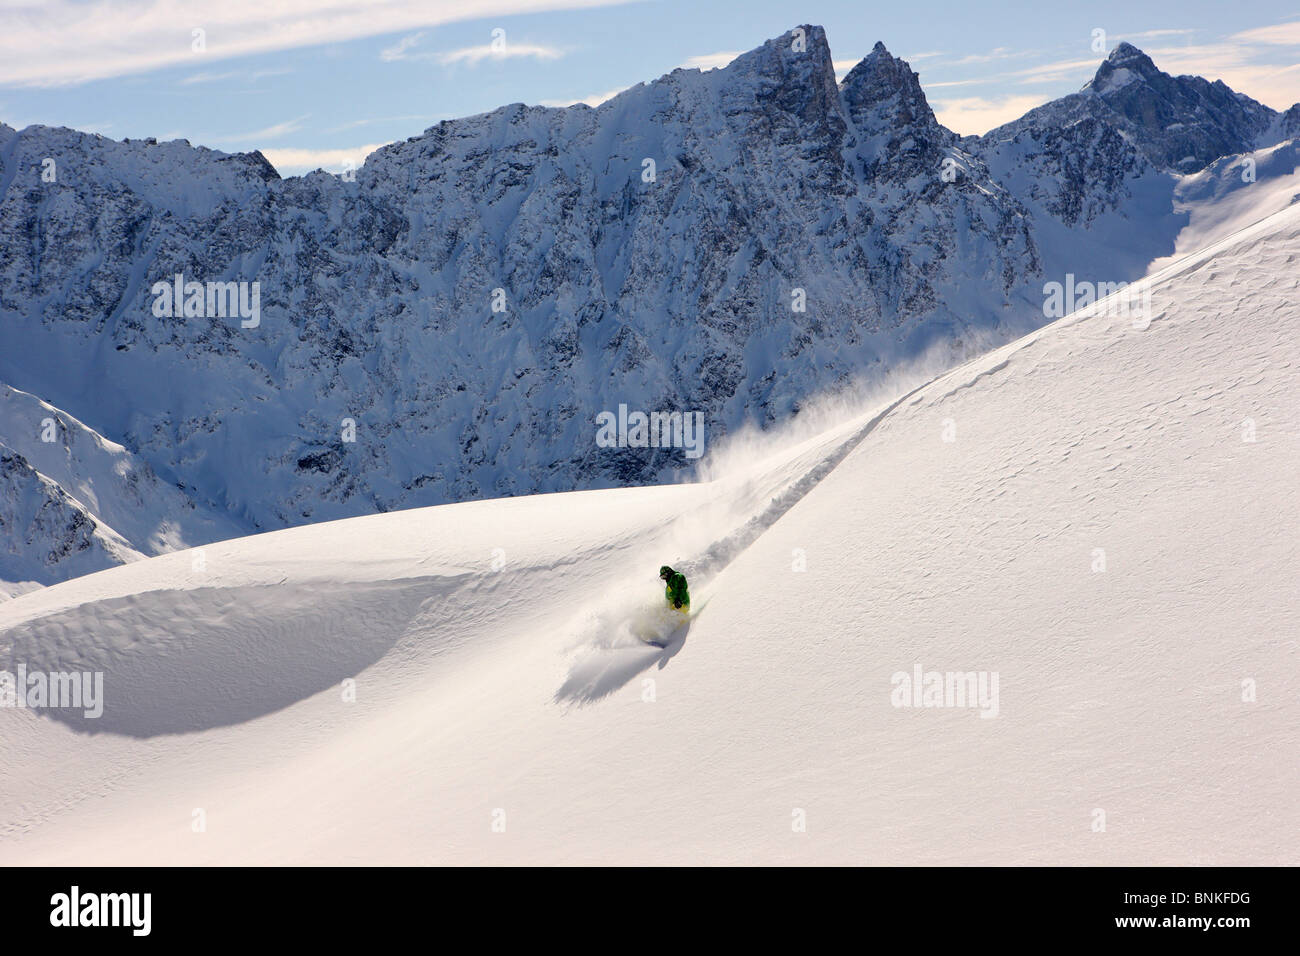 Svizzera Inverno Sport invernali di neve snowboard snowboard montagna velocità montagna rapidità canton Grigioni Grigioni Foto Stock